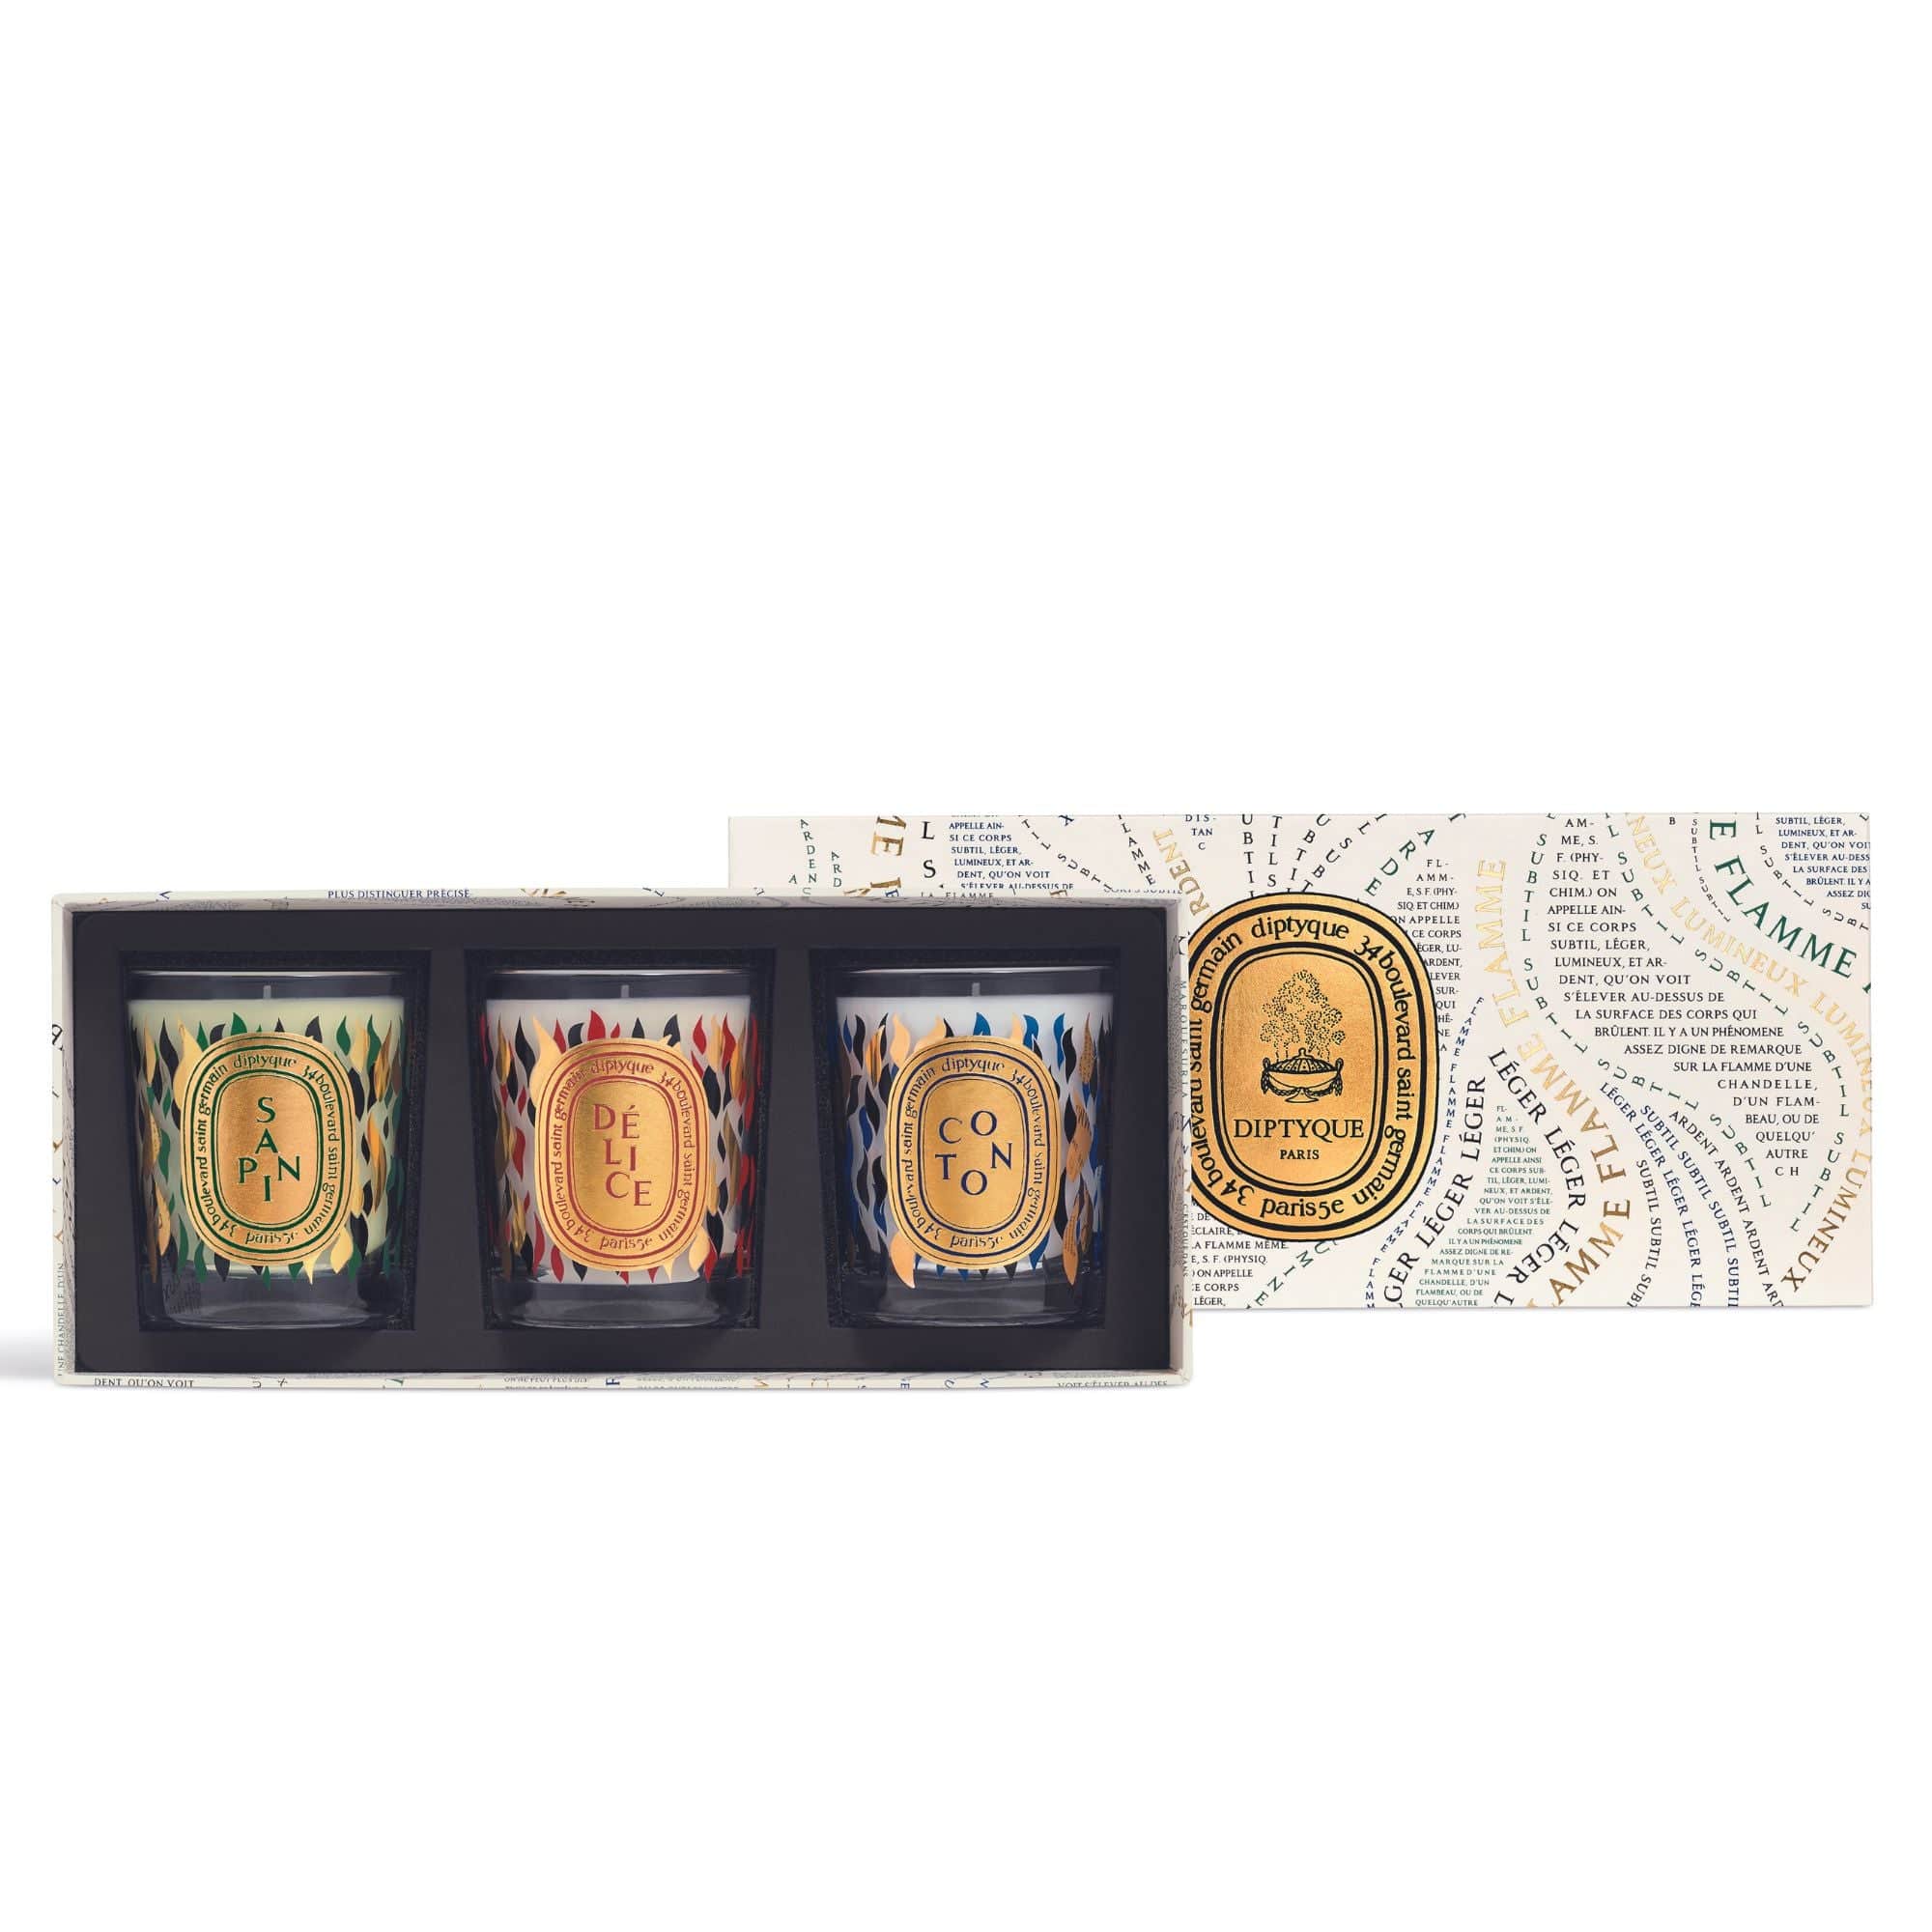 Set de 3 velas Sapin, Délice y Coton de DIPTYQUE Set de edición limitada